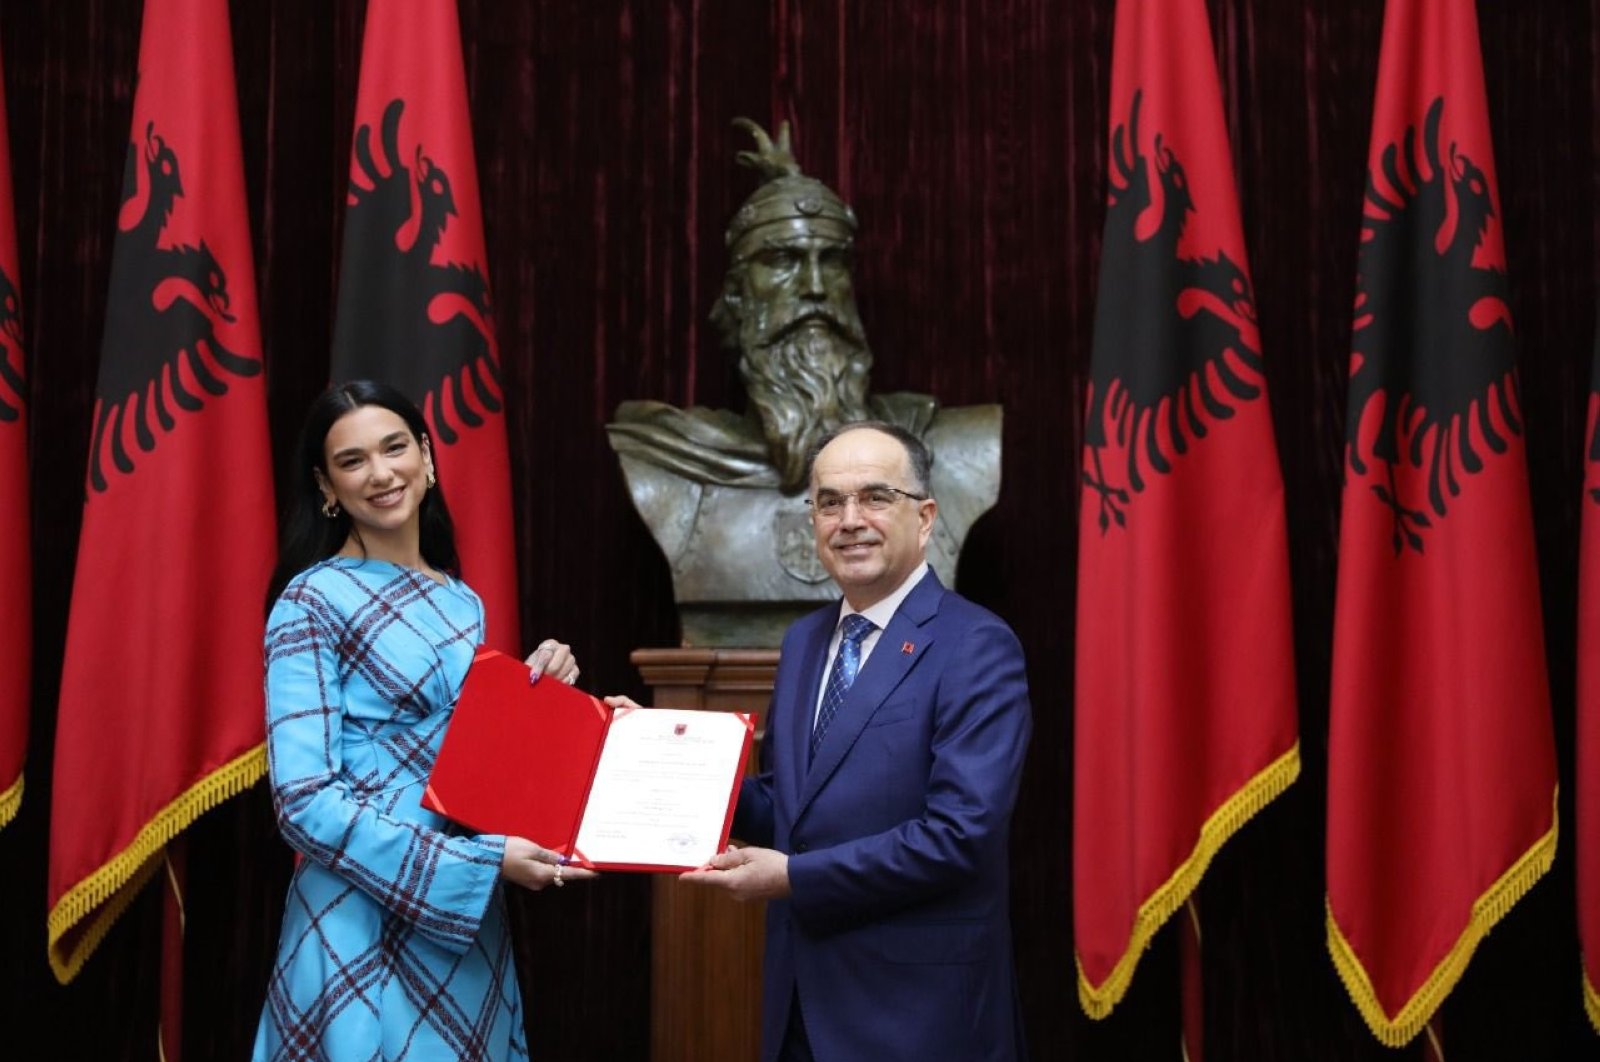 Bintang pop Dua Lipa diberikan kewarganegaraan Albania oleh presiden